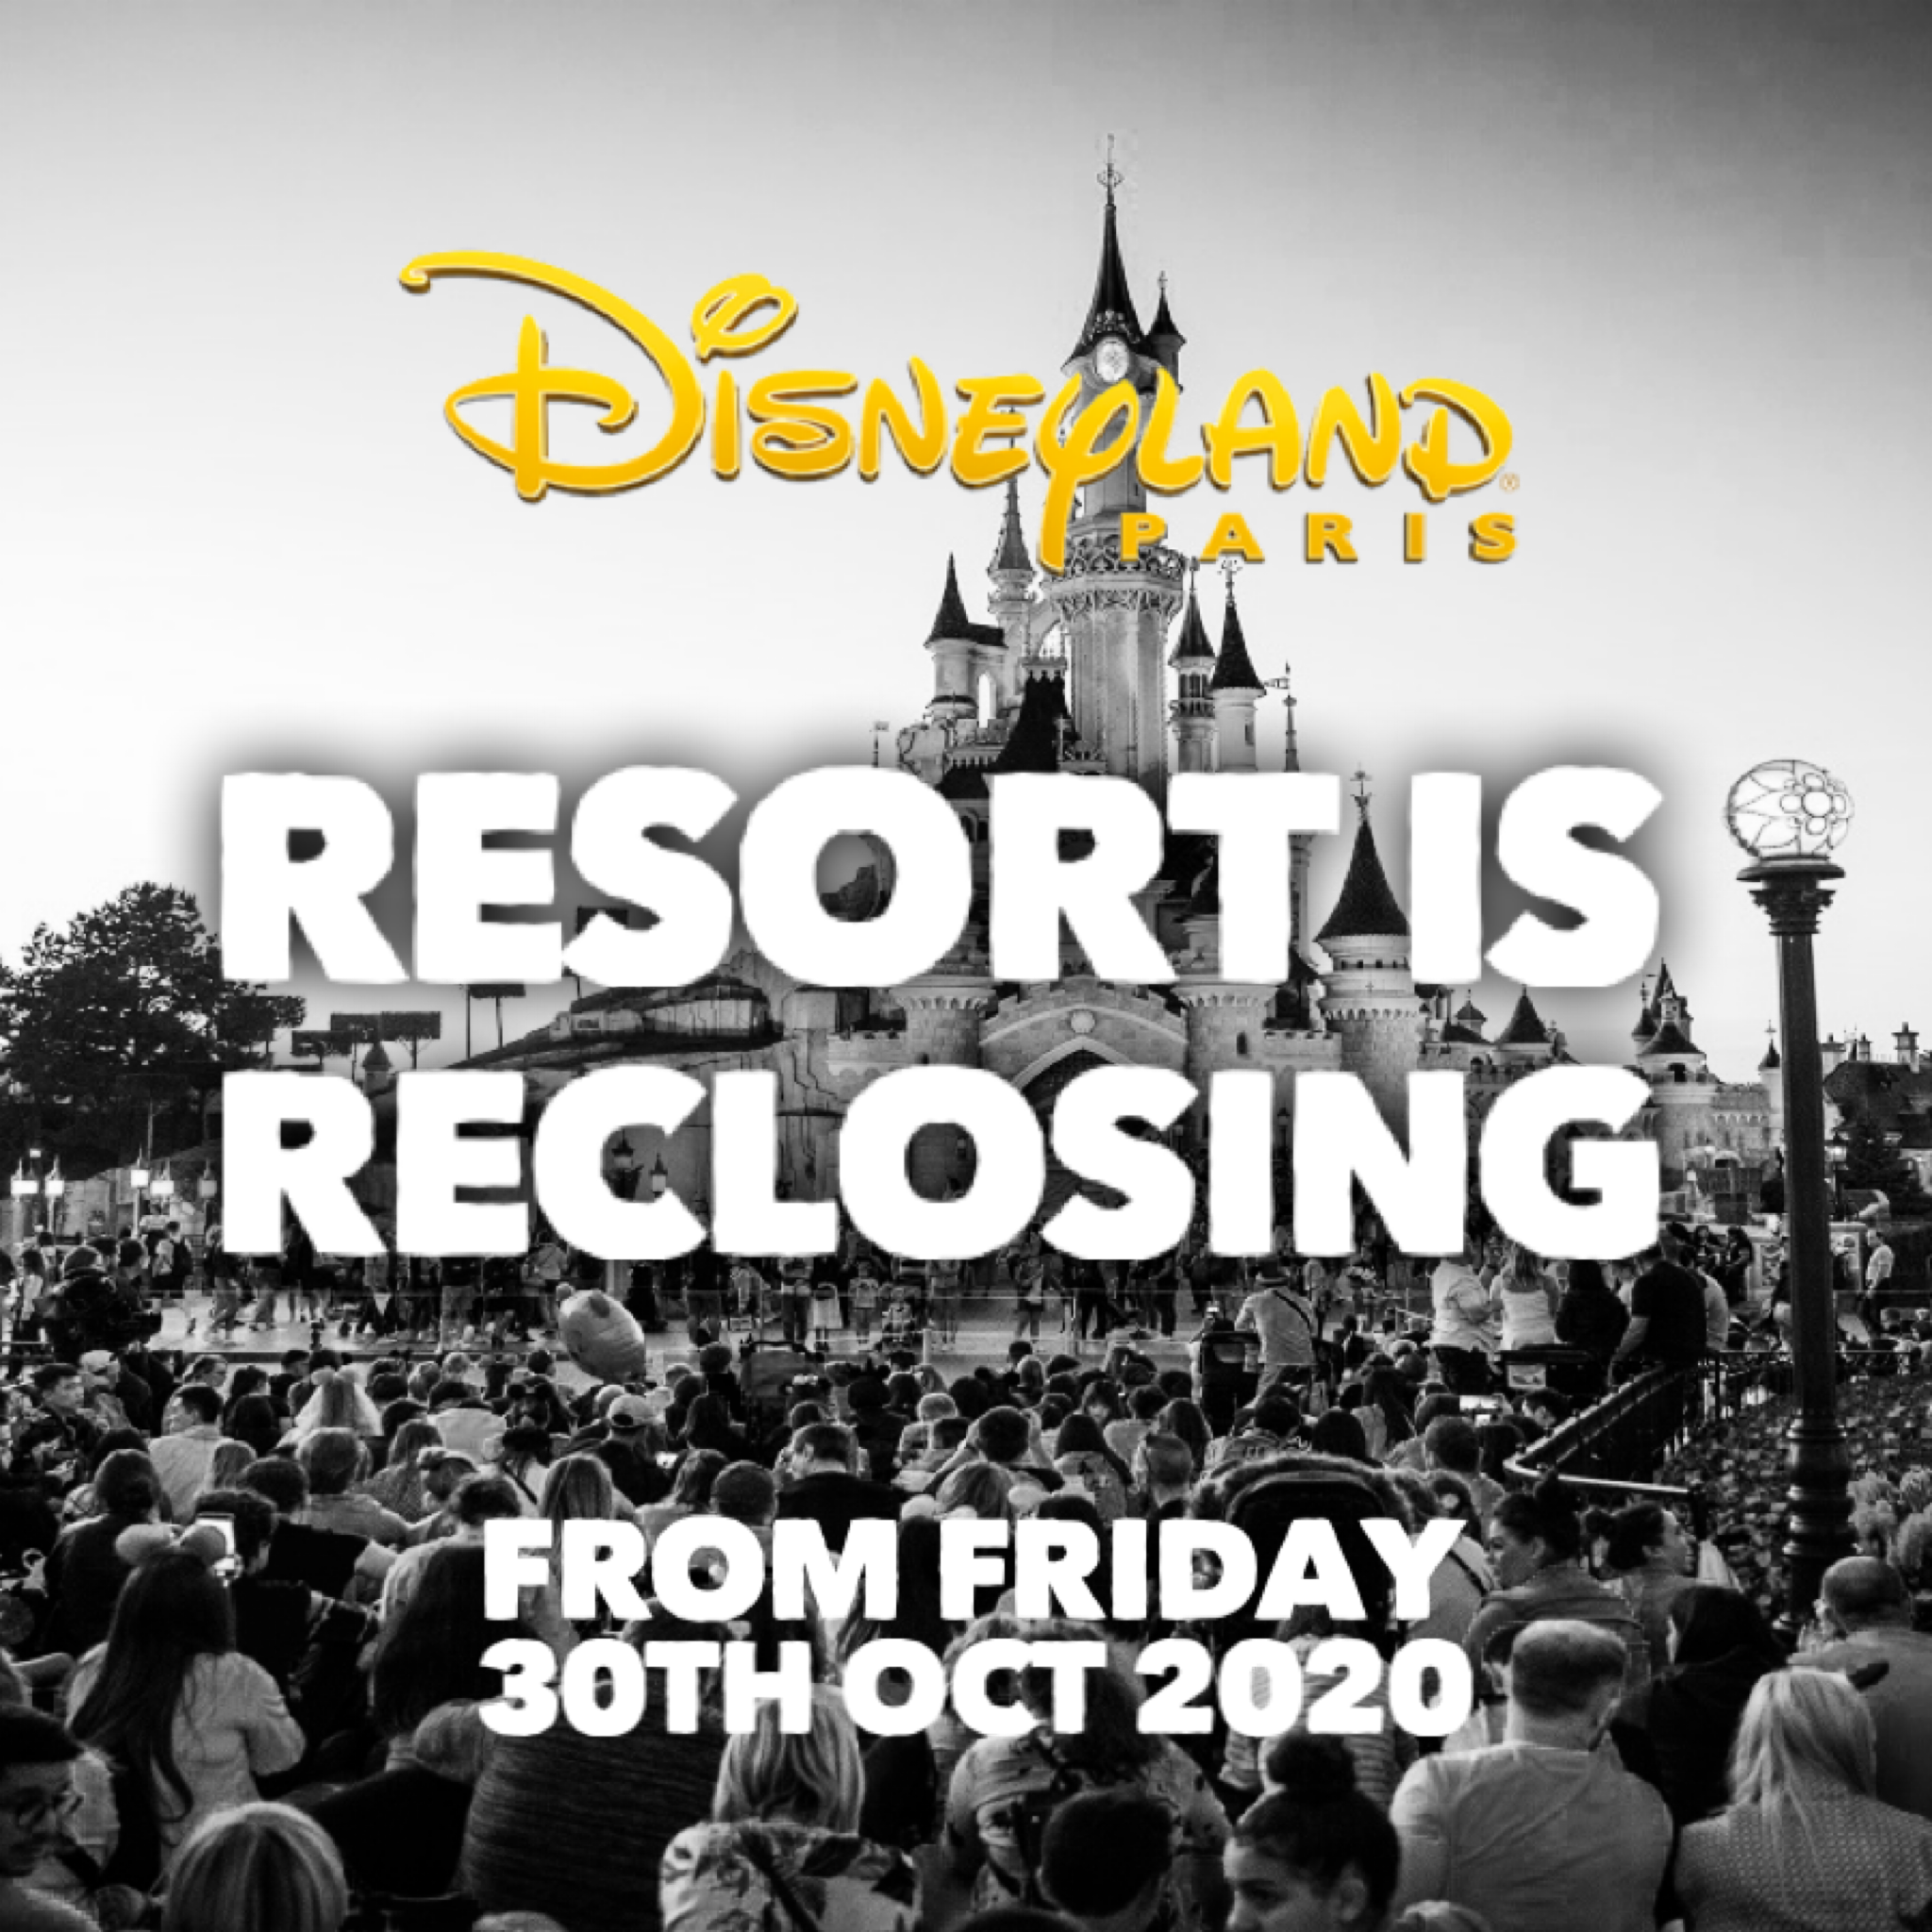 Disneyland Paris Reclosing Oct 30th 2020